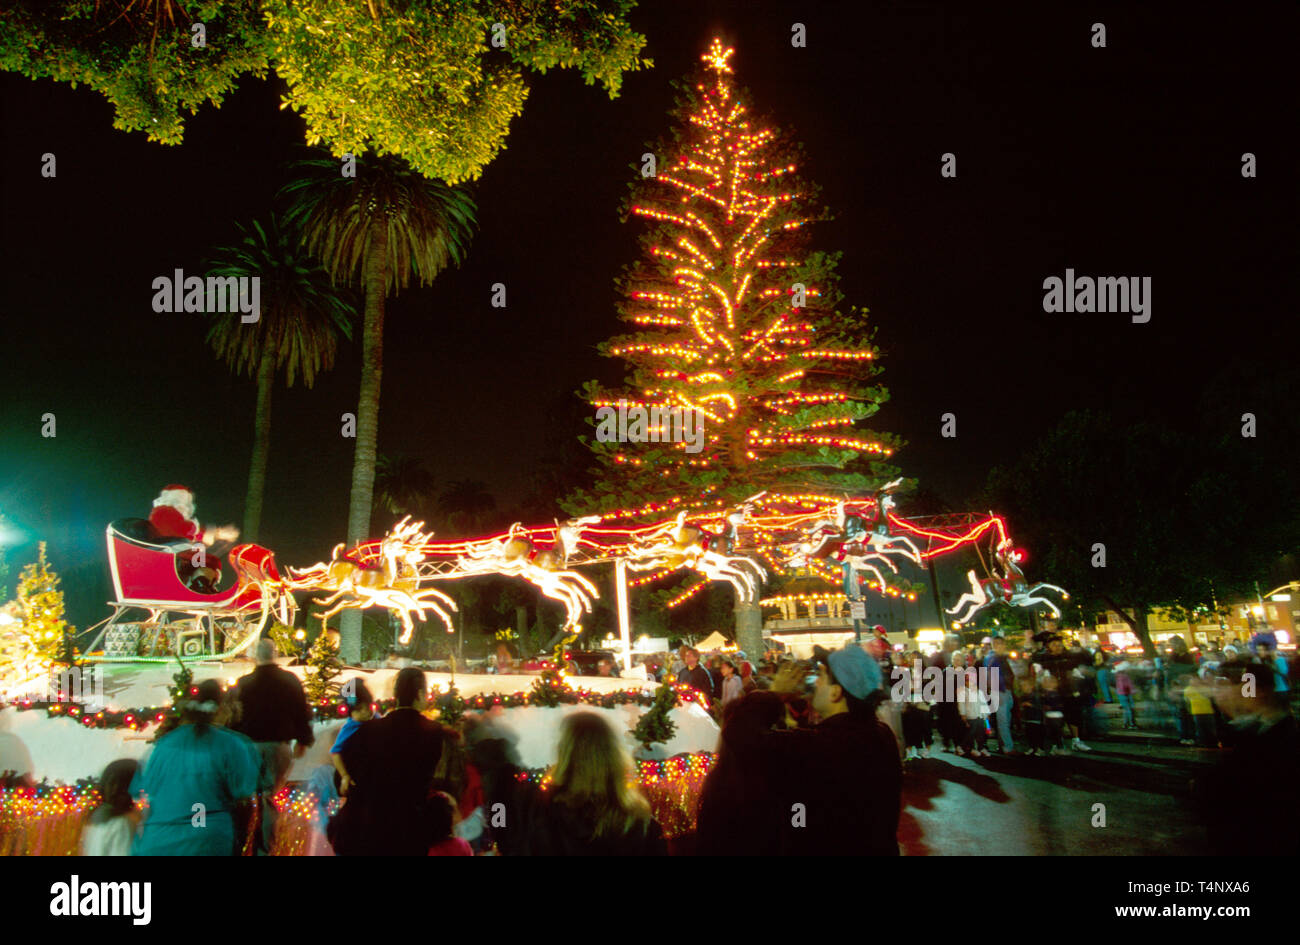 Oxnard California, Plaza Park, Weihnachtsbaum Bäume, Holz, Pflanze, Flora, Besucher Reise Reise Reise Tourismus Wahrzeichen Kultur Kultur Kultur, Stockfoto